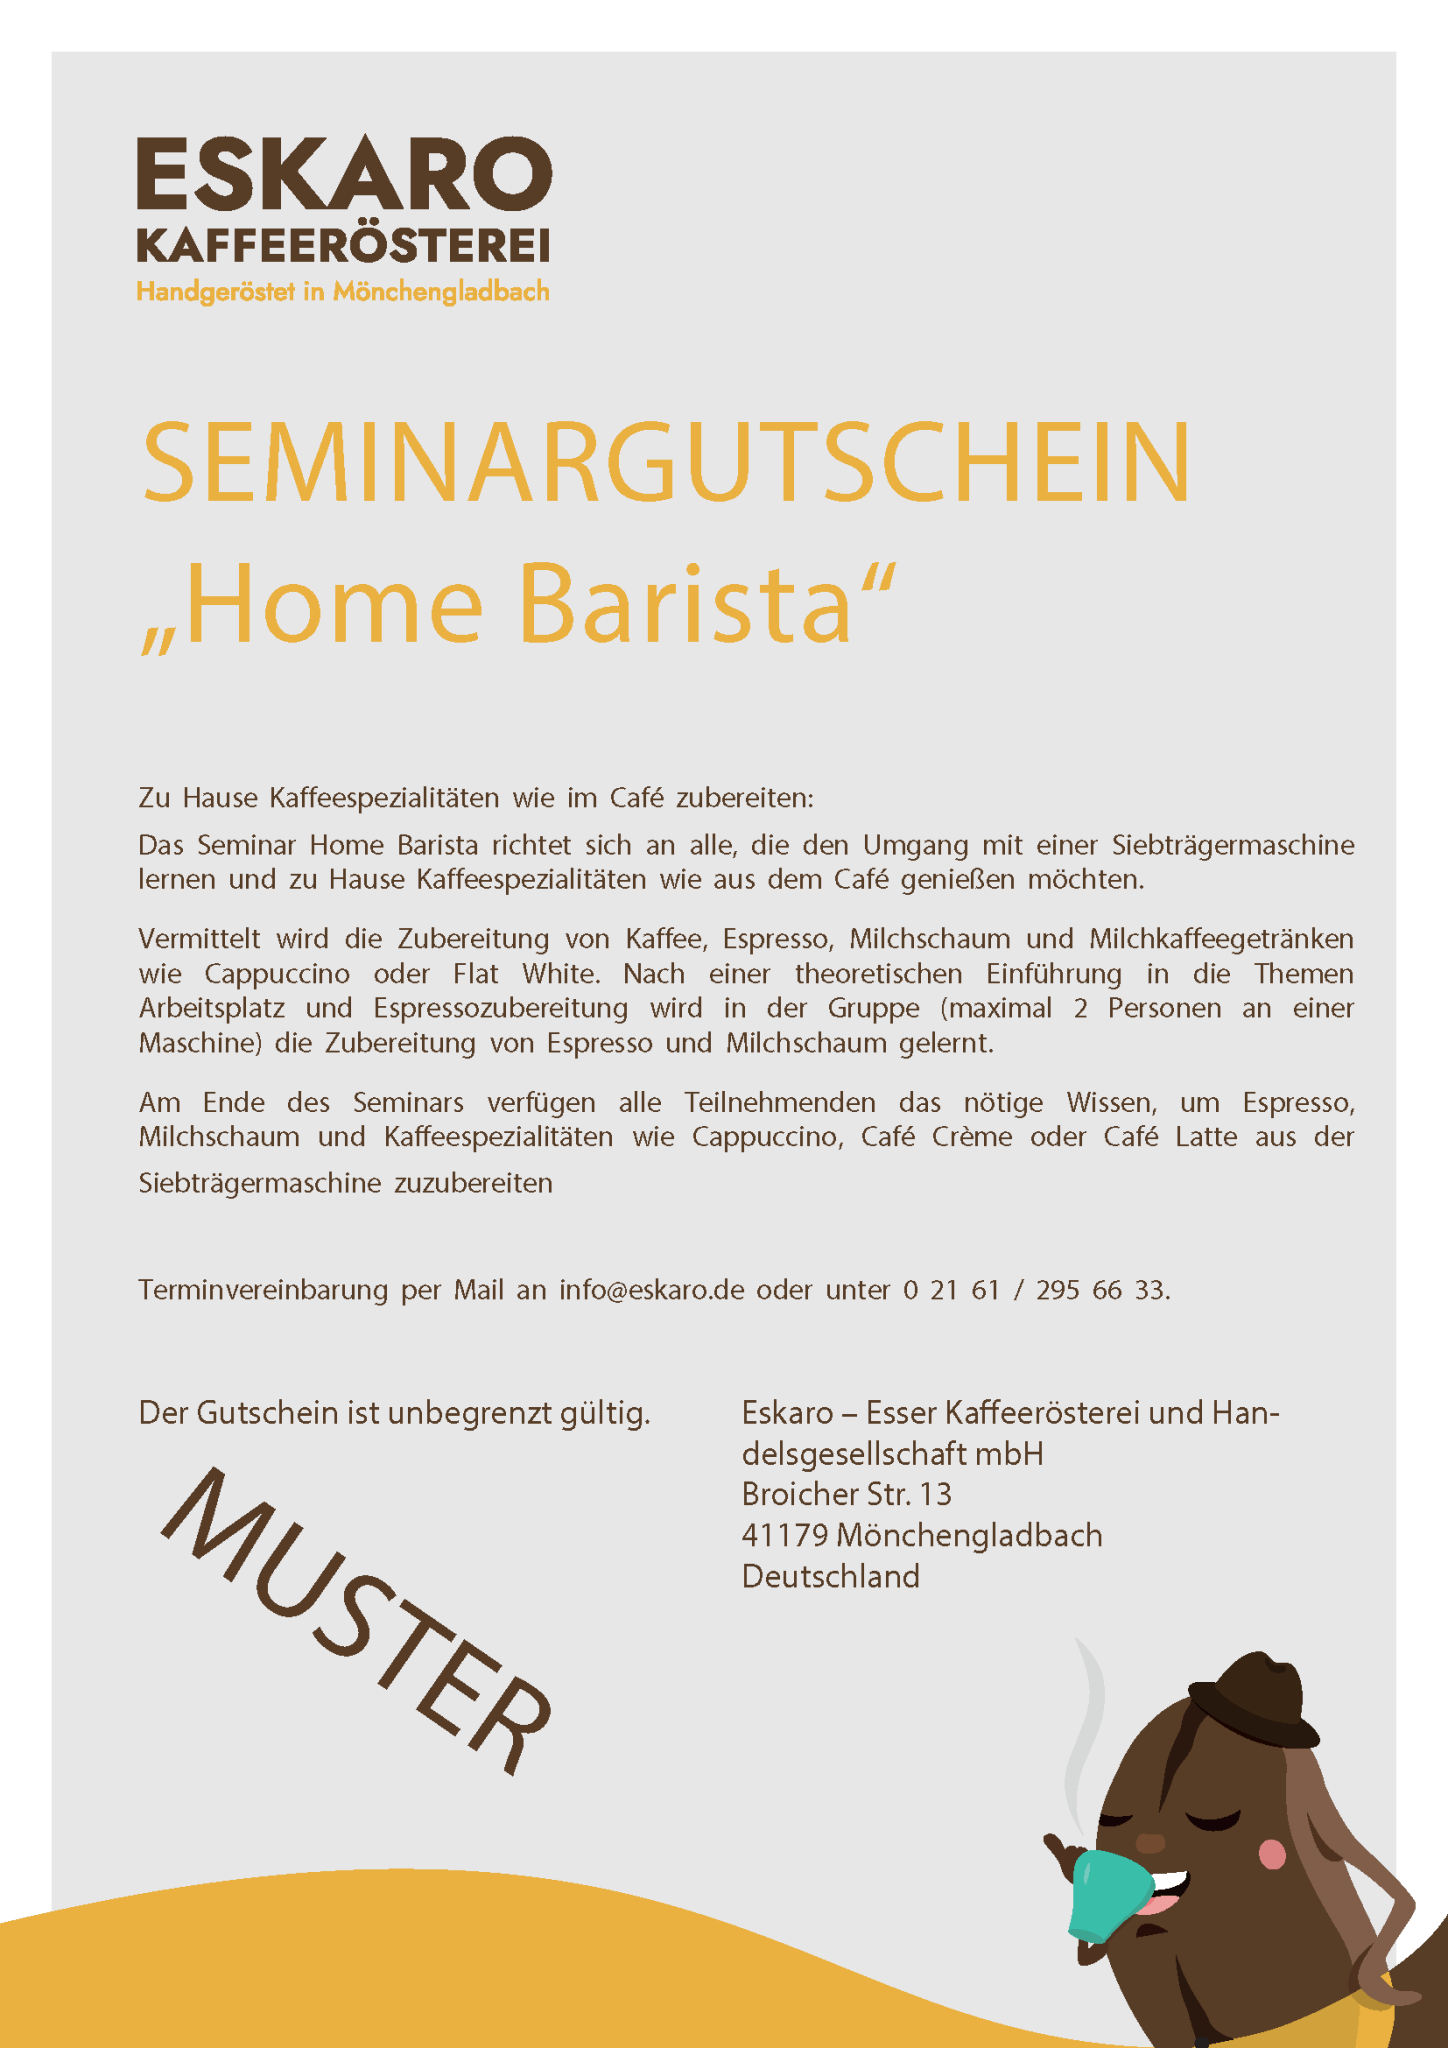 Seminargutschein Home Barista - Eskaro - Esser Kaffeerösterei und Handelsgesellschaft mbH